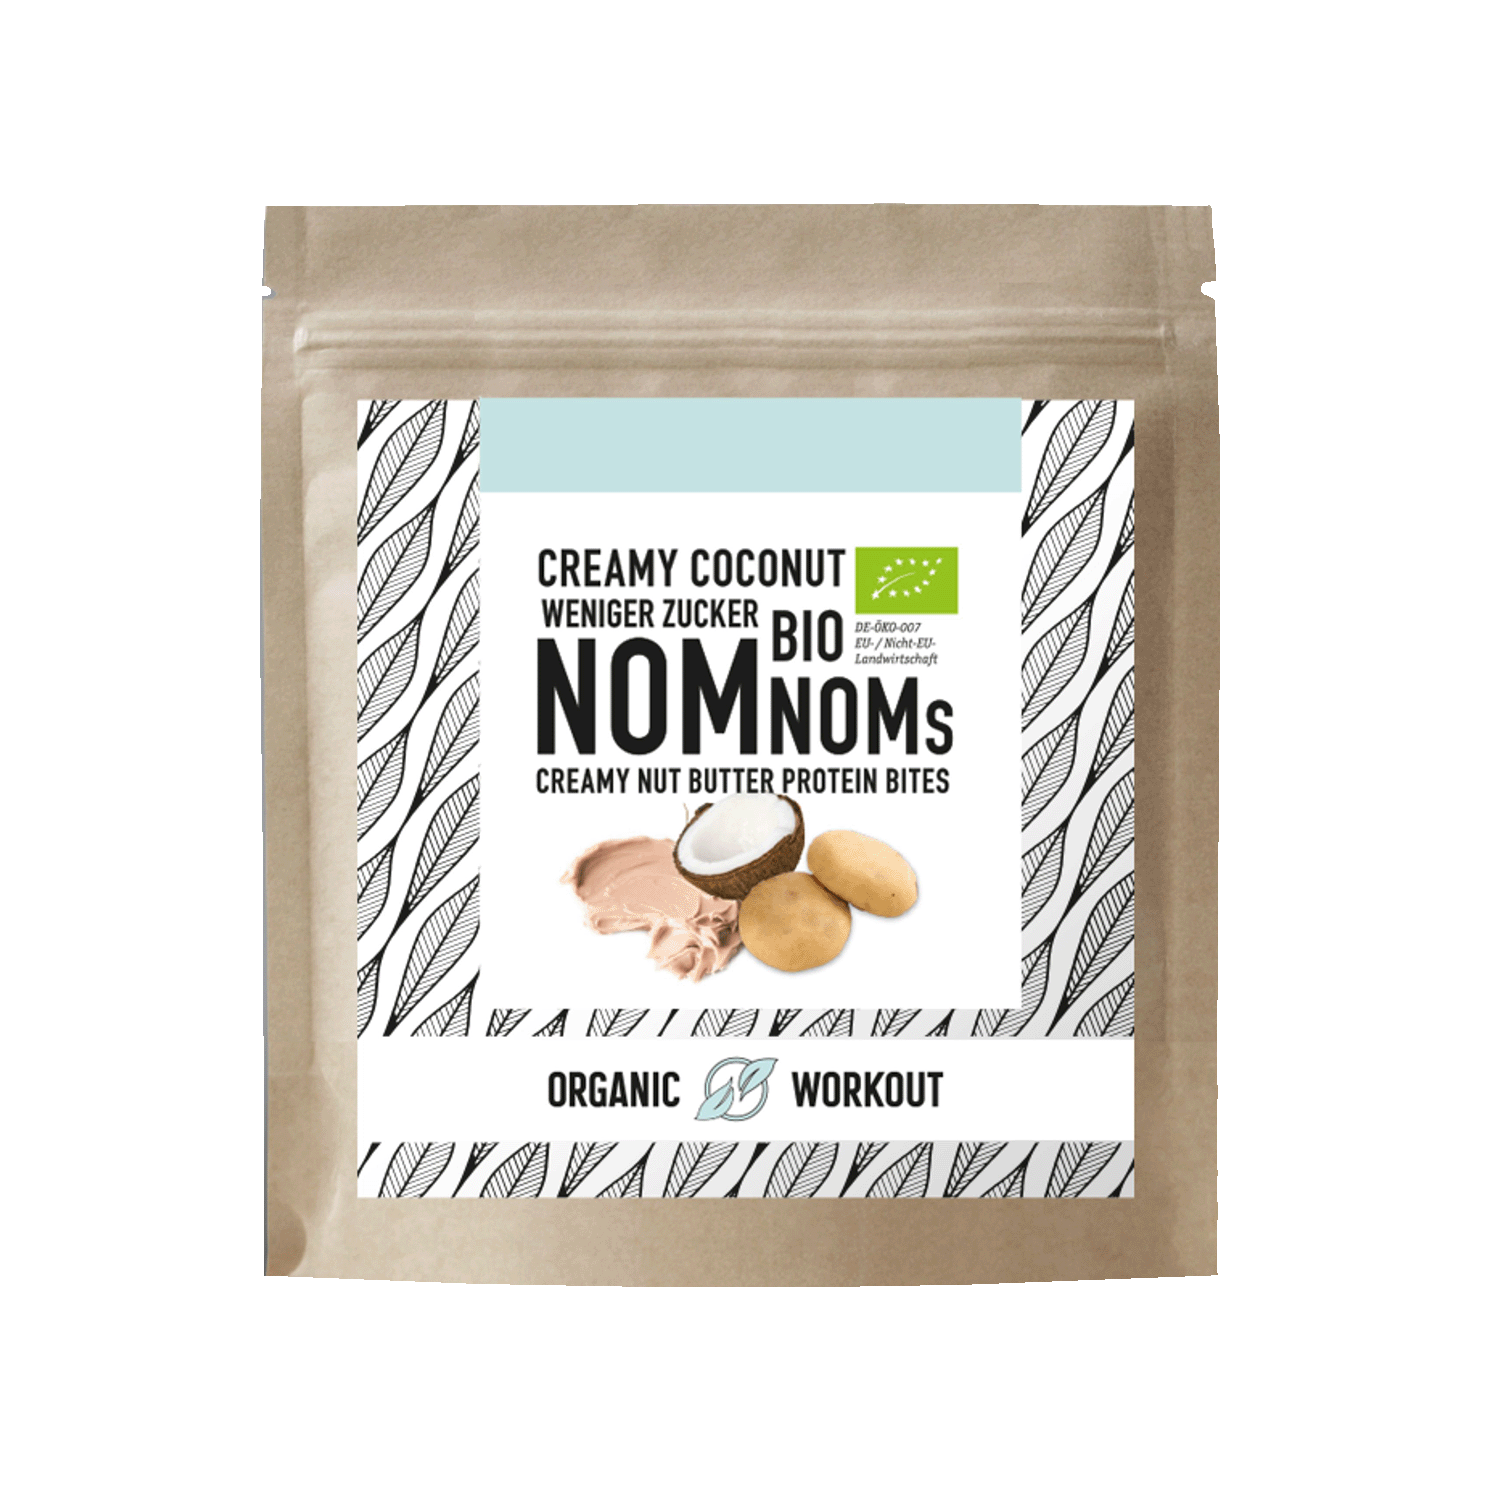 Creamy Coconut Protein NomNoms, BIO, 45g